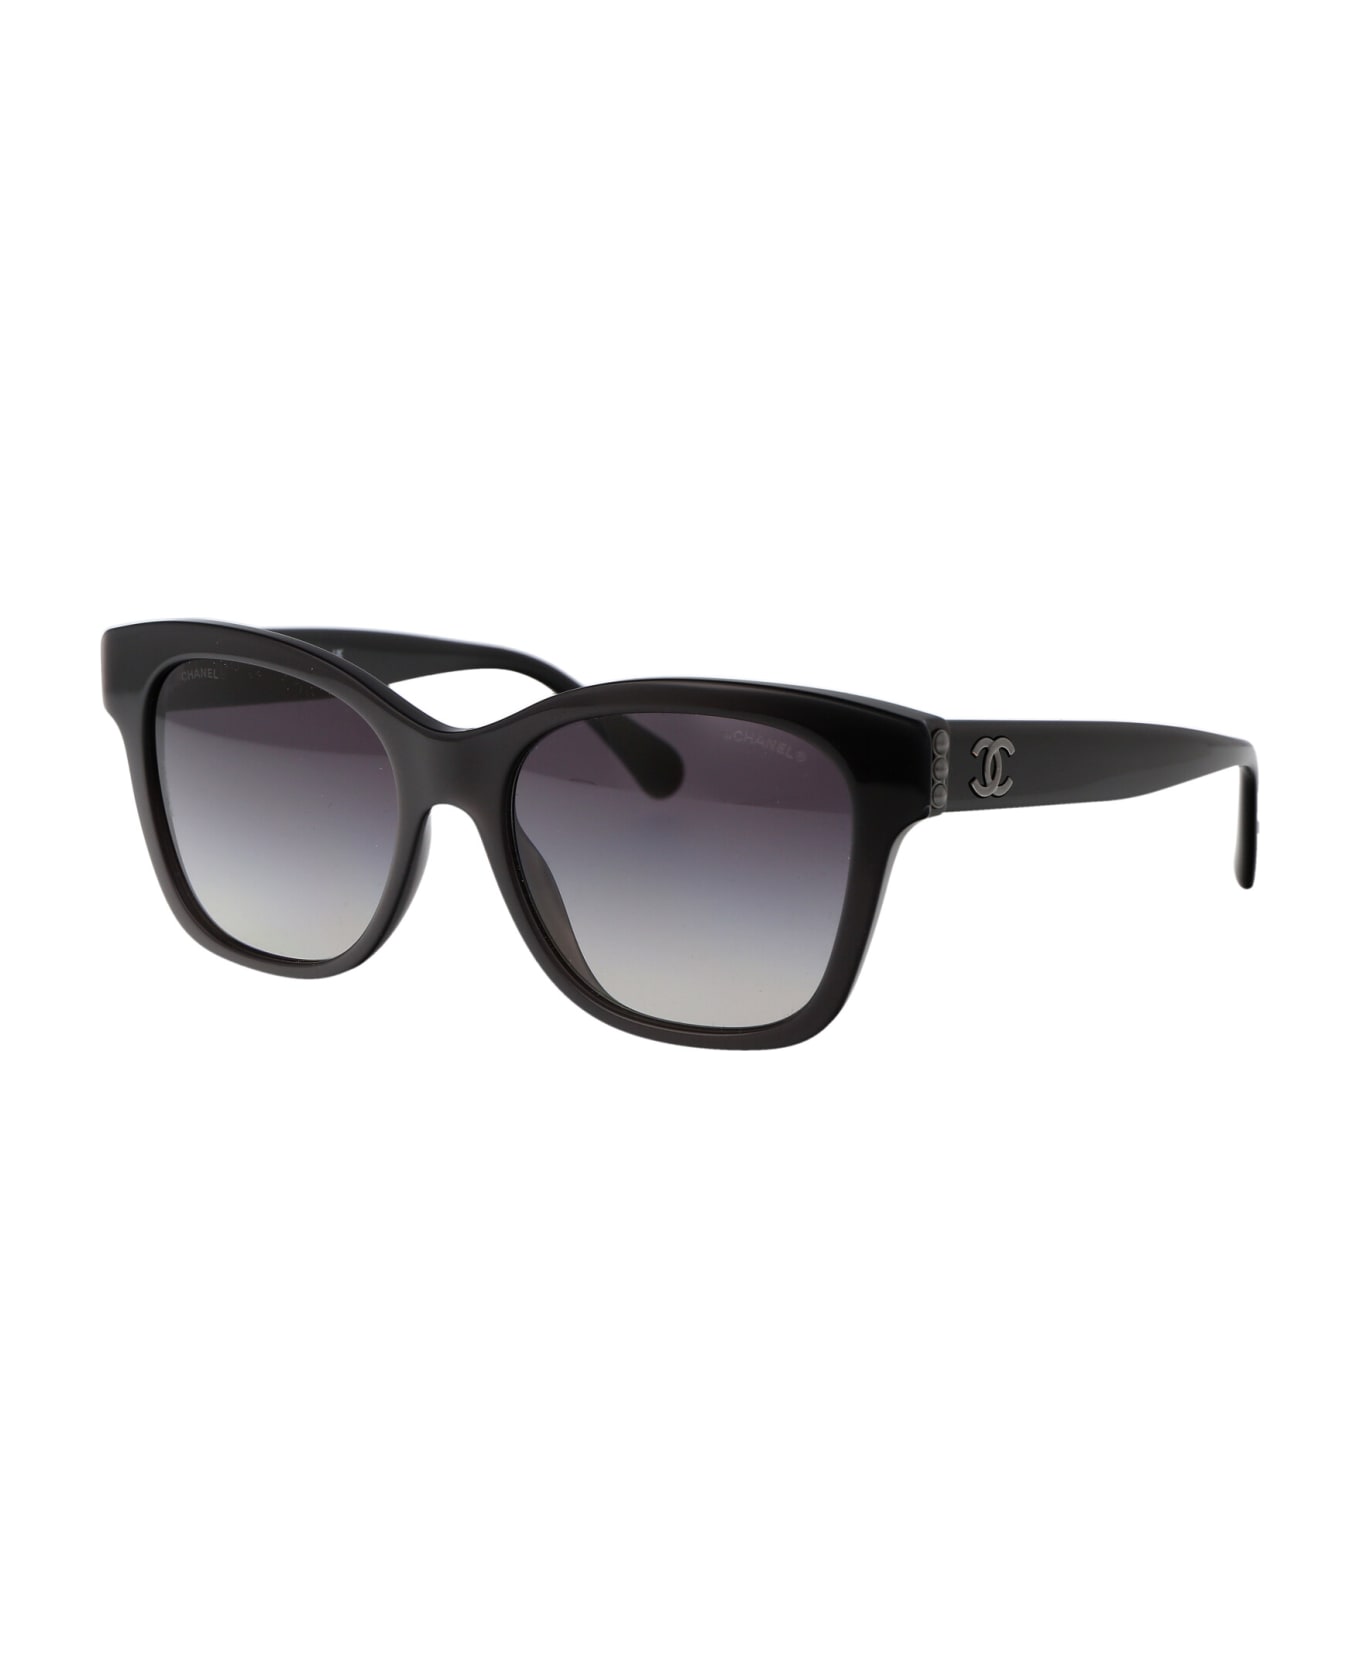 Chanel 0ch5482h Sunglasses - 1716S6 サングラス